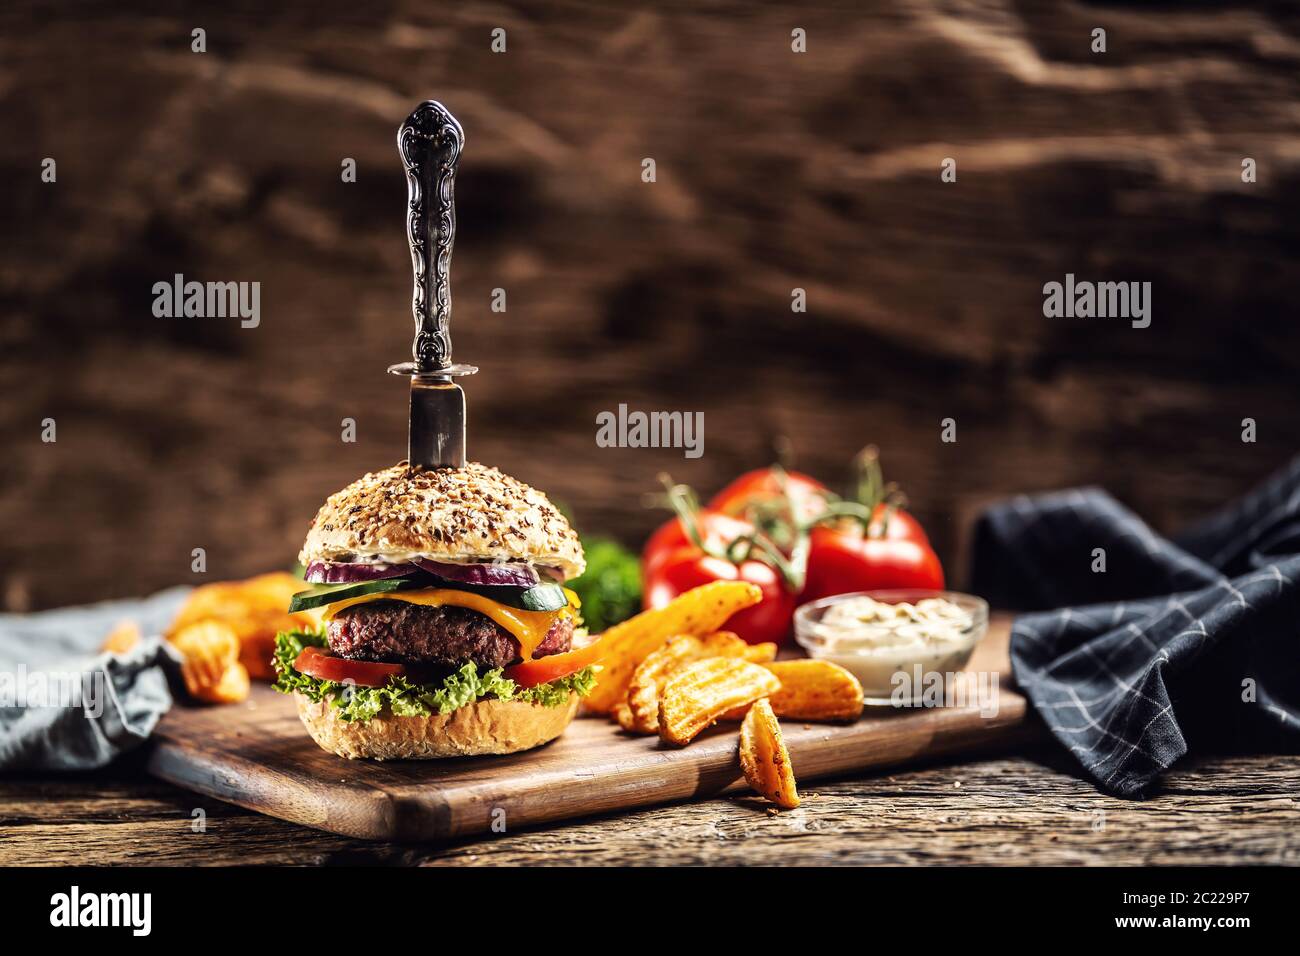 Messer in einem Hamburger mit Kartoffelkeilen auf einer Seite in einem dunklen rustikalen Umgebung erstochen Stockfoto